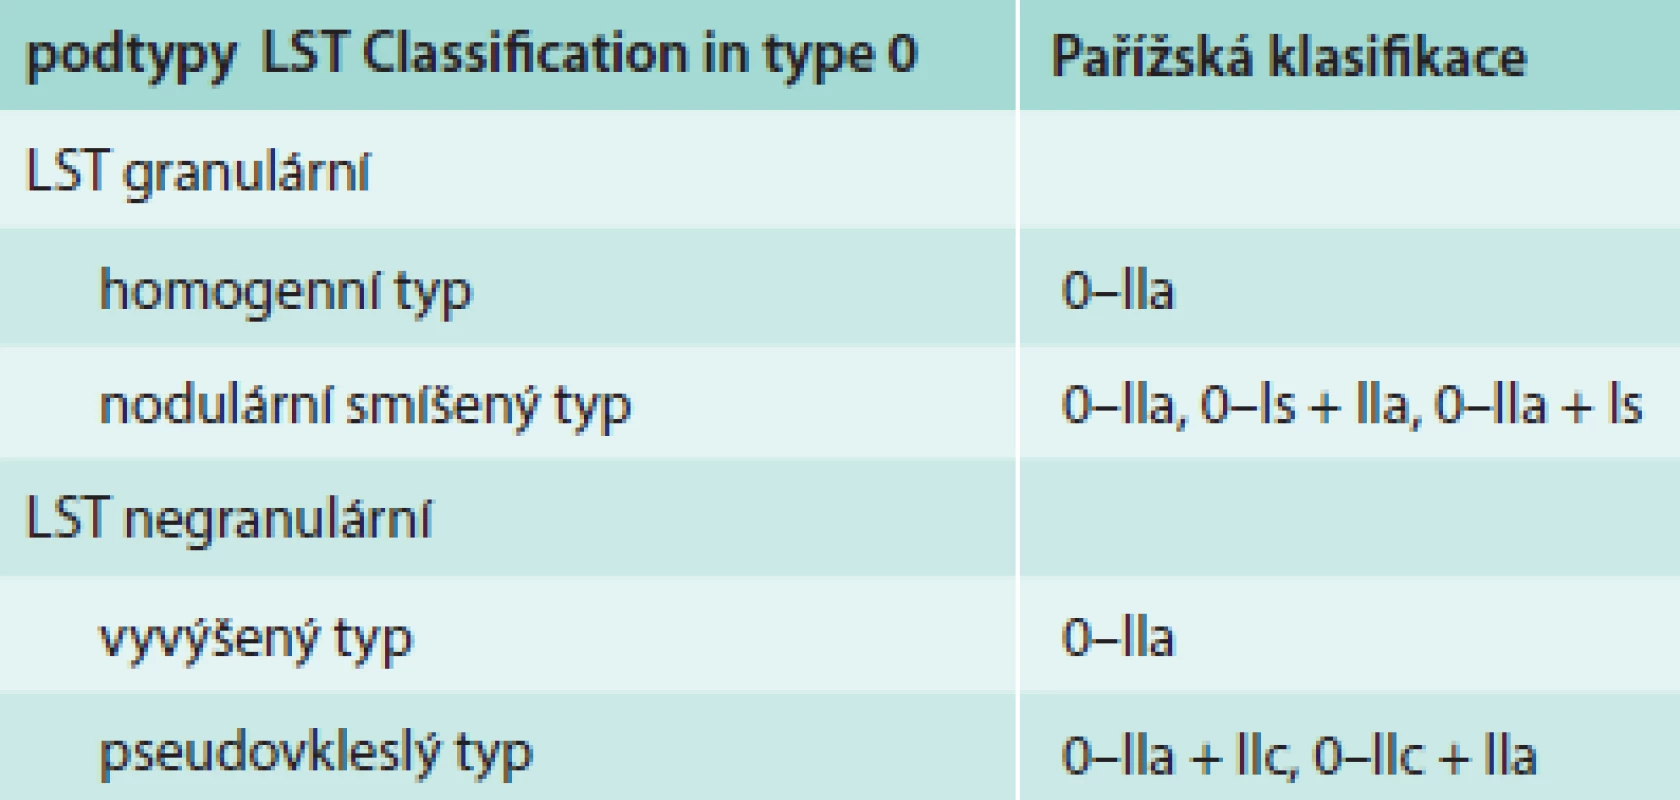 Morfologická klasifikace LST lézí a korelace s Pařížskou klasifikací [9]